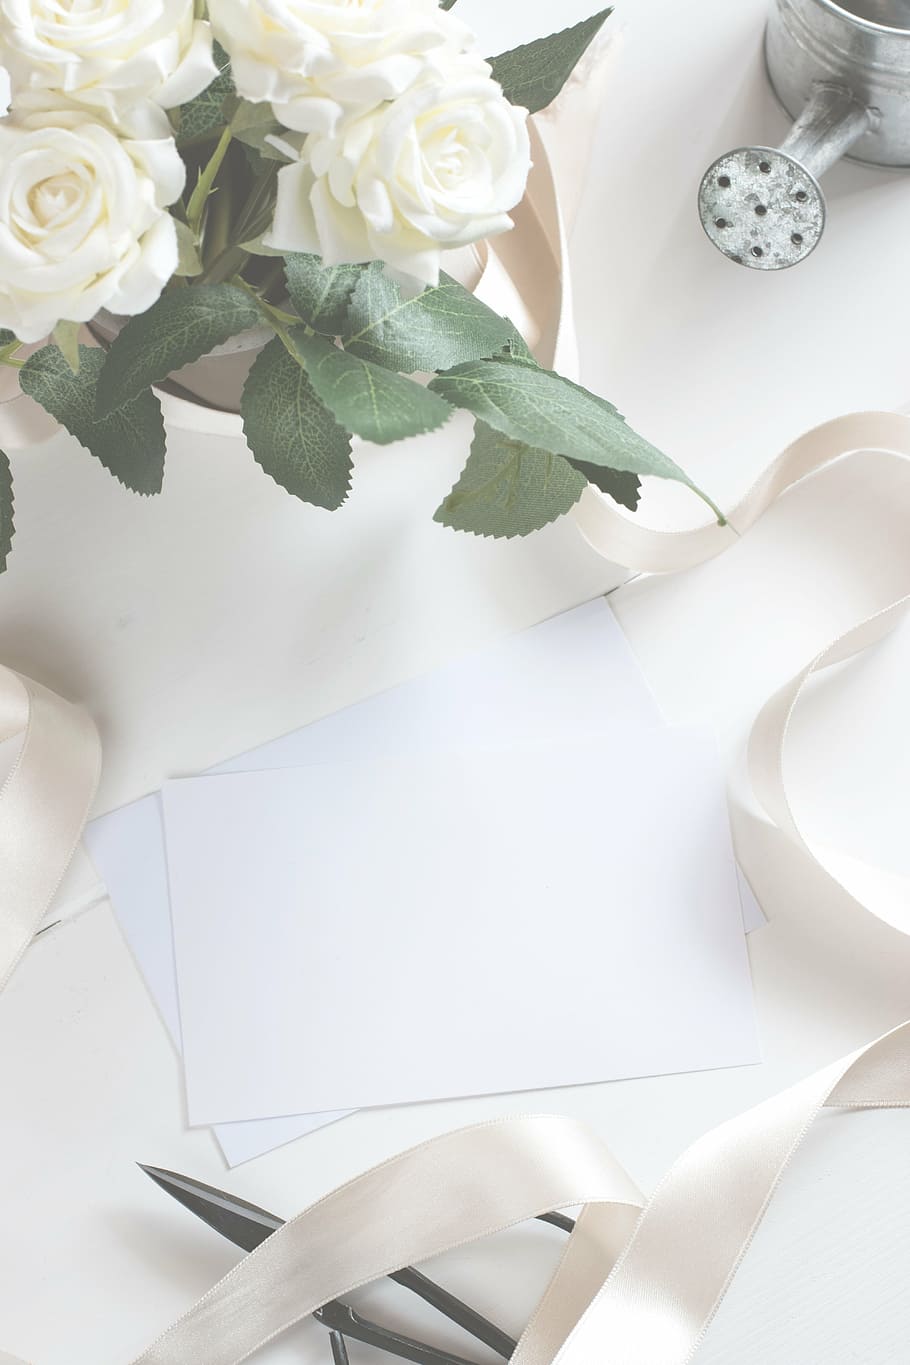 putih, kertas, meja, di samping, bunga petaled, kartu pos, gambar, bingkai, kanvas, kartu